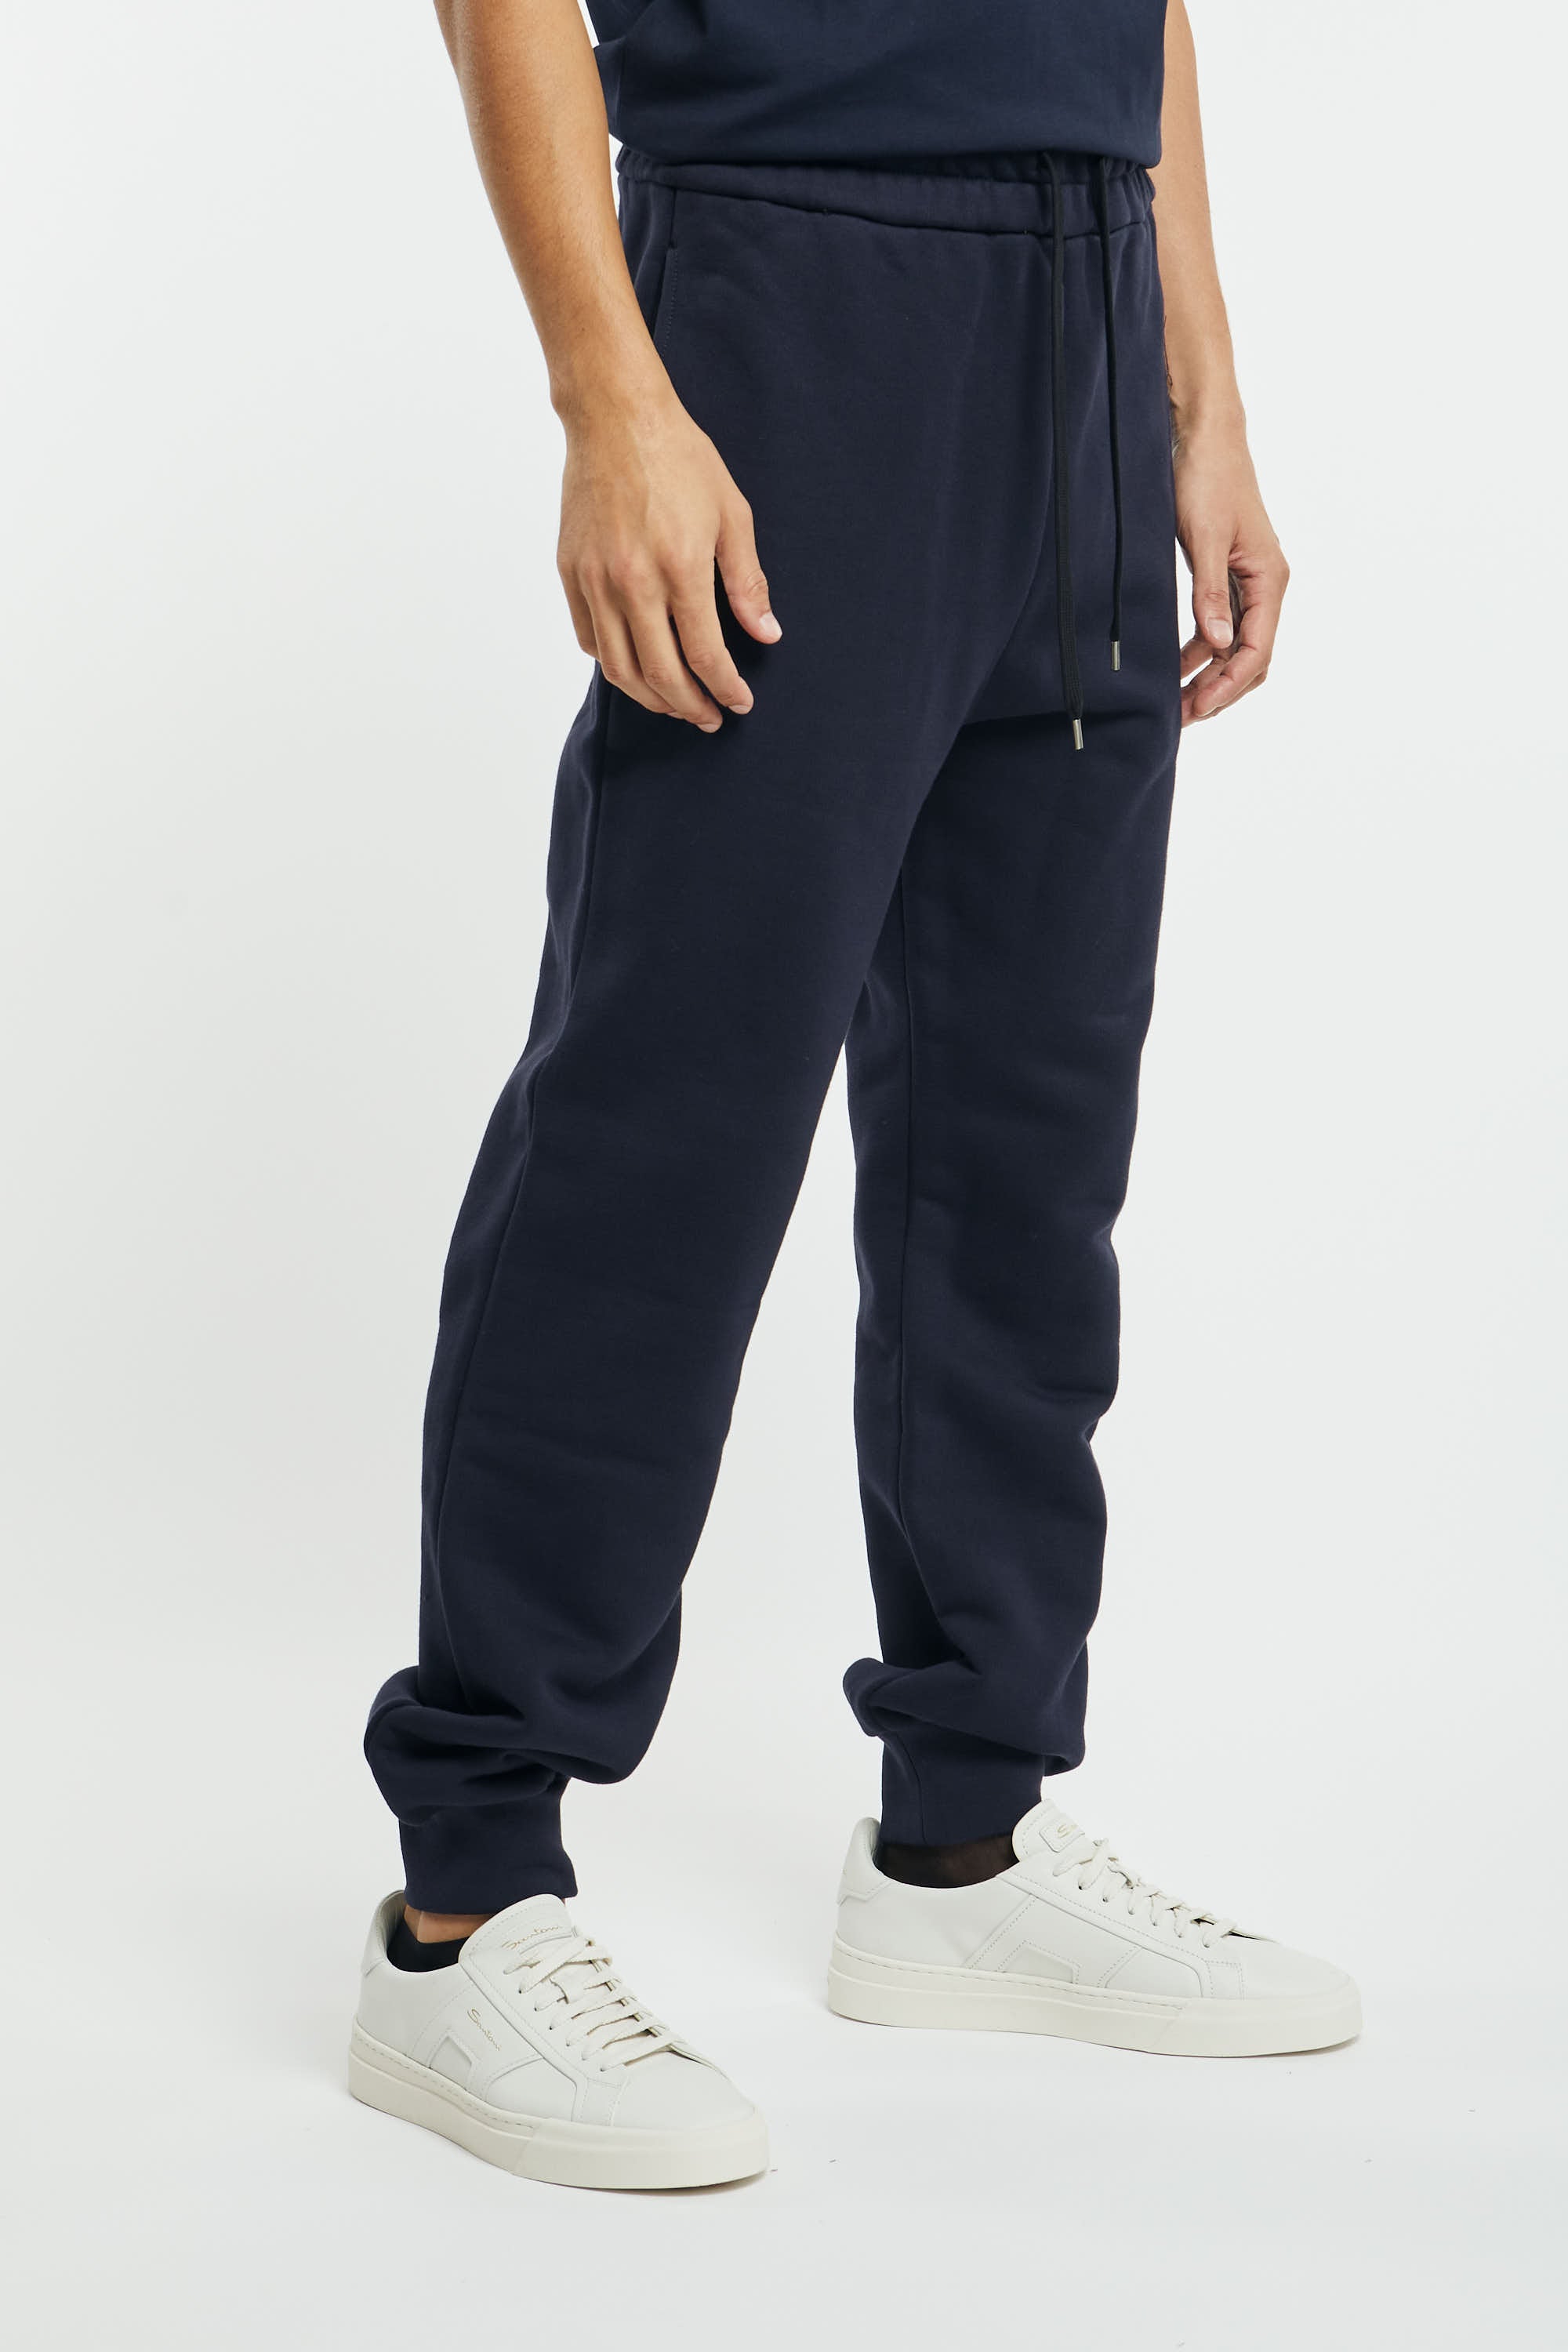 N°21 Blue Cotton Pants - 4